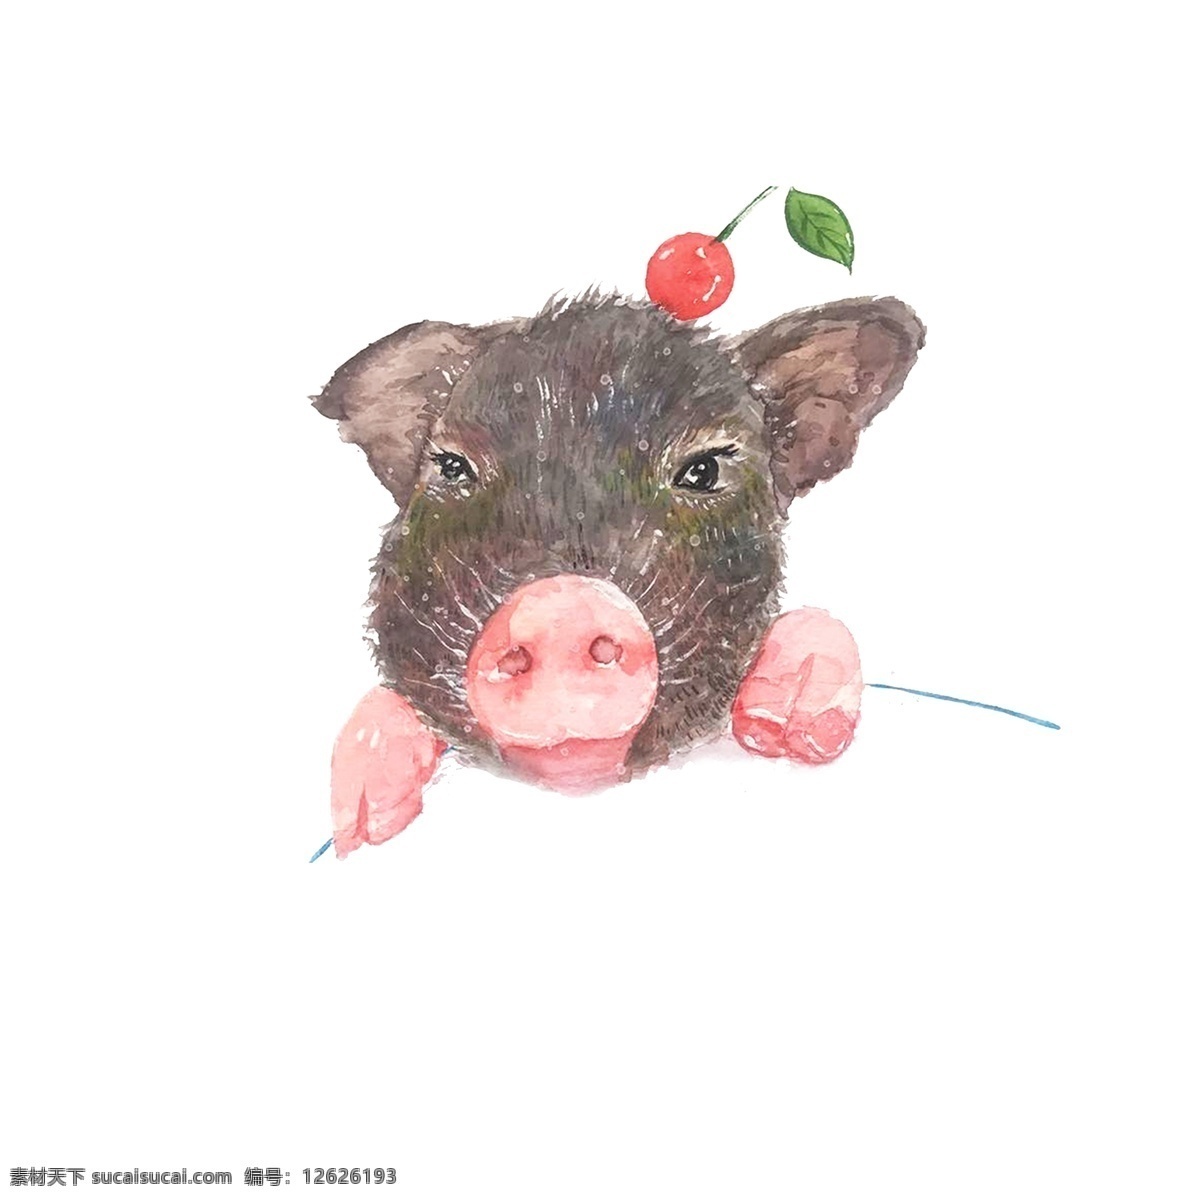 2019 生肖 猪 手绘 元素 商用 可爱 水彩手绘 卖萌 小清新 红樱桃